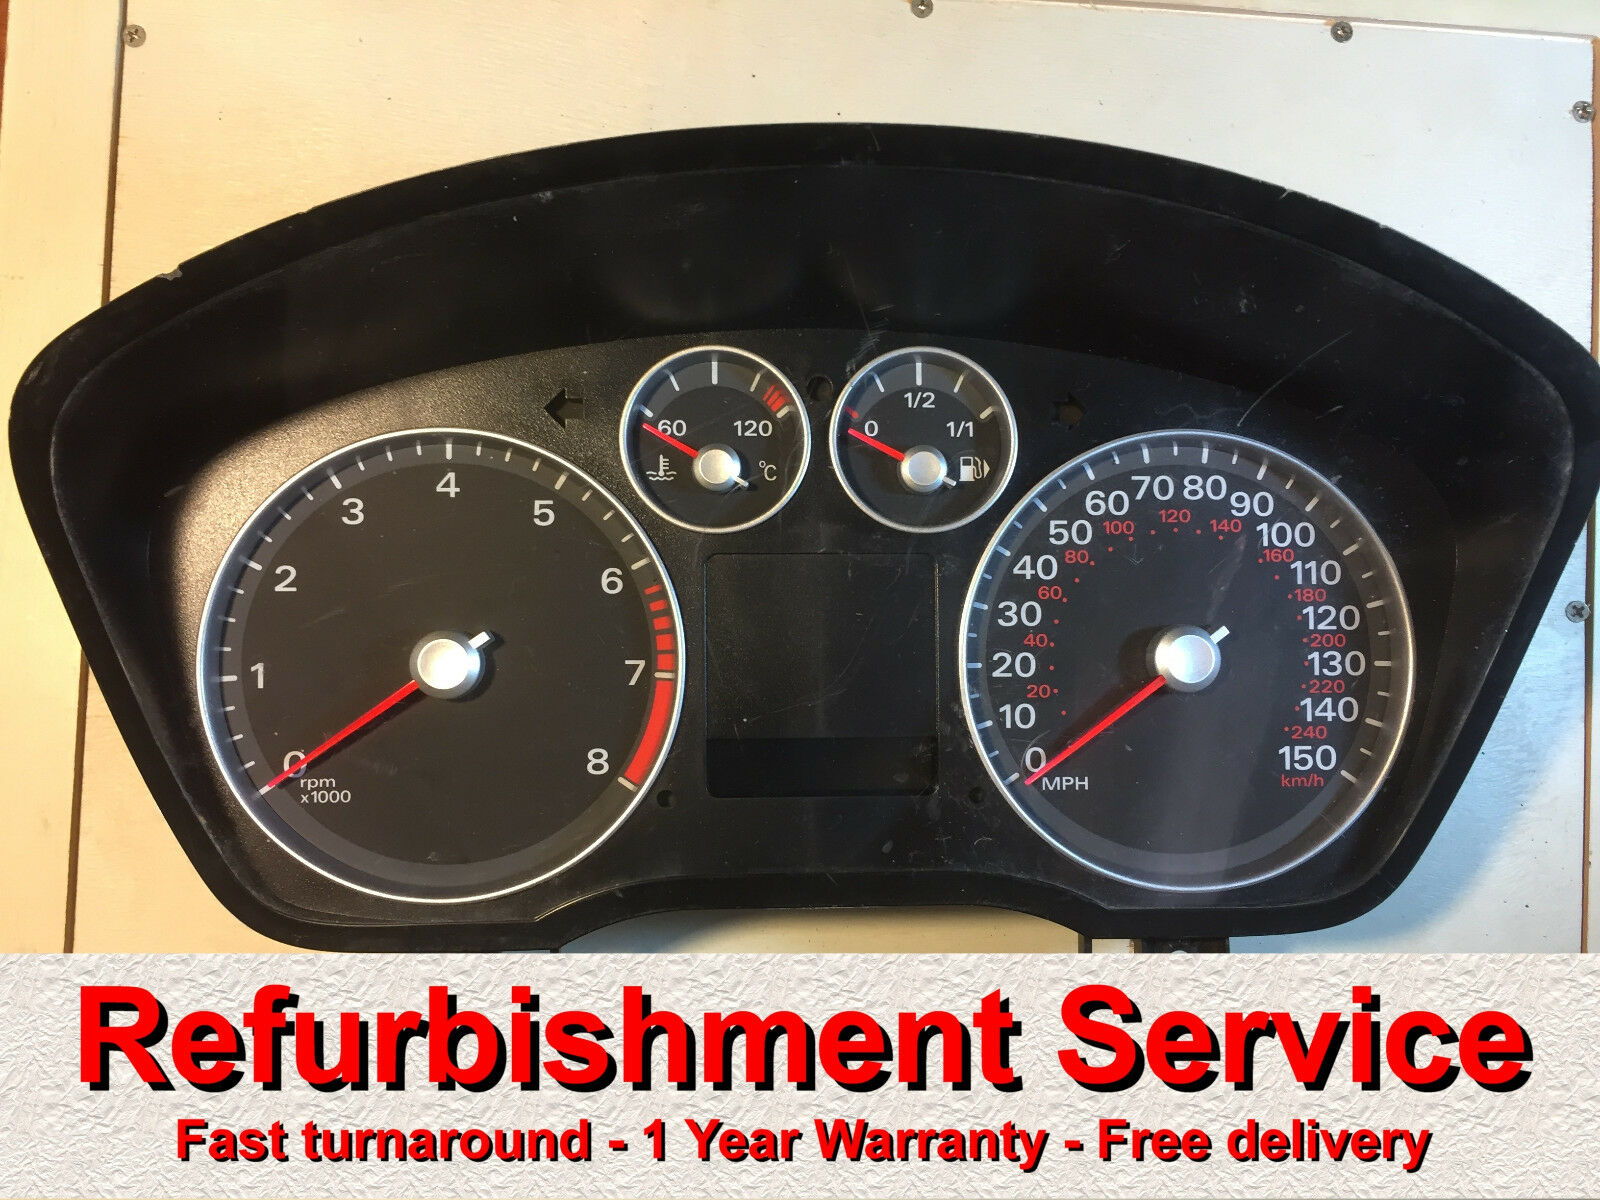 Ford Focus / / Kuga Visteon Instrument | Repair service Buy Now